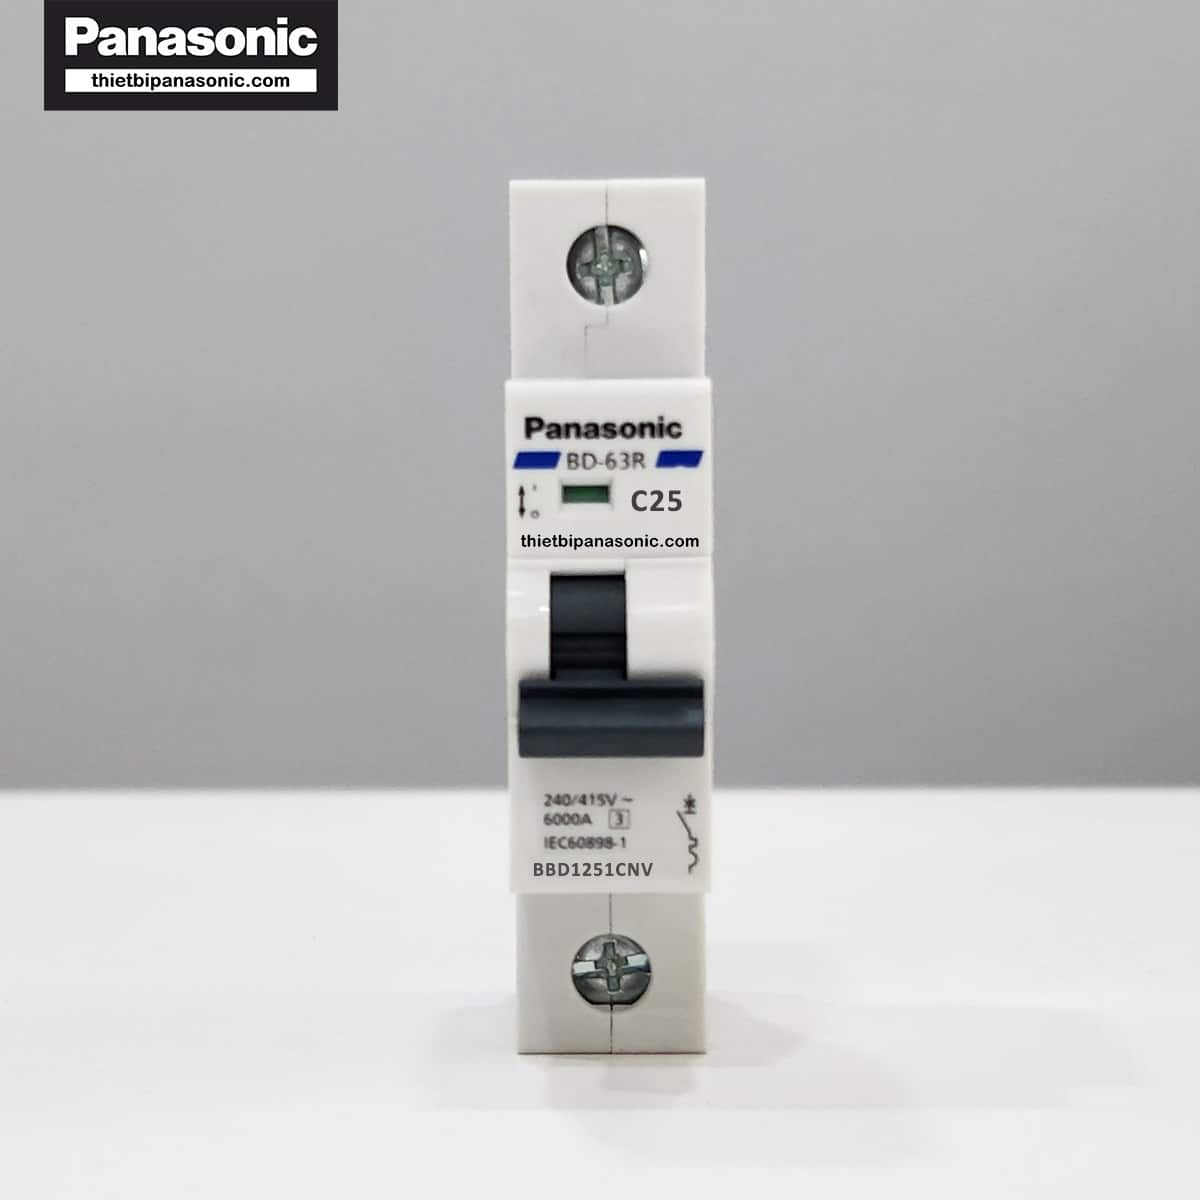 MCB 1P 25A 6kA Panasonic ở trạng thái tắt (dấu hiệu nhận biết màu xanh)